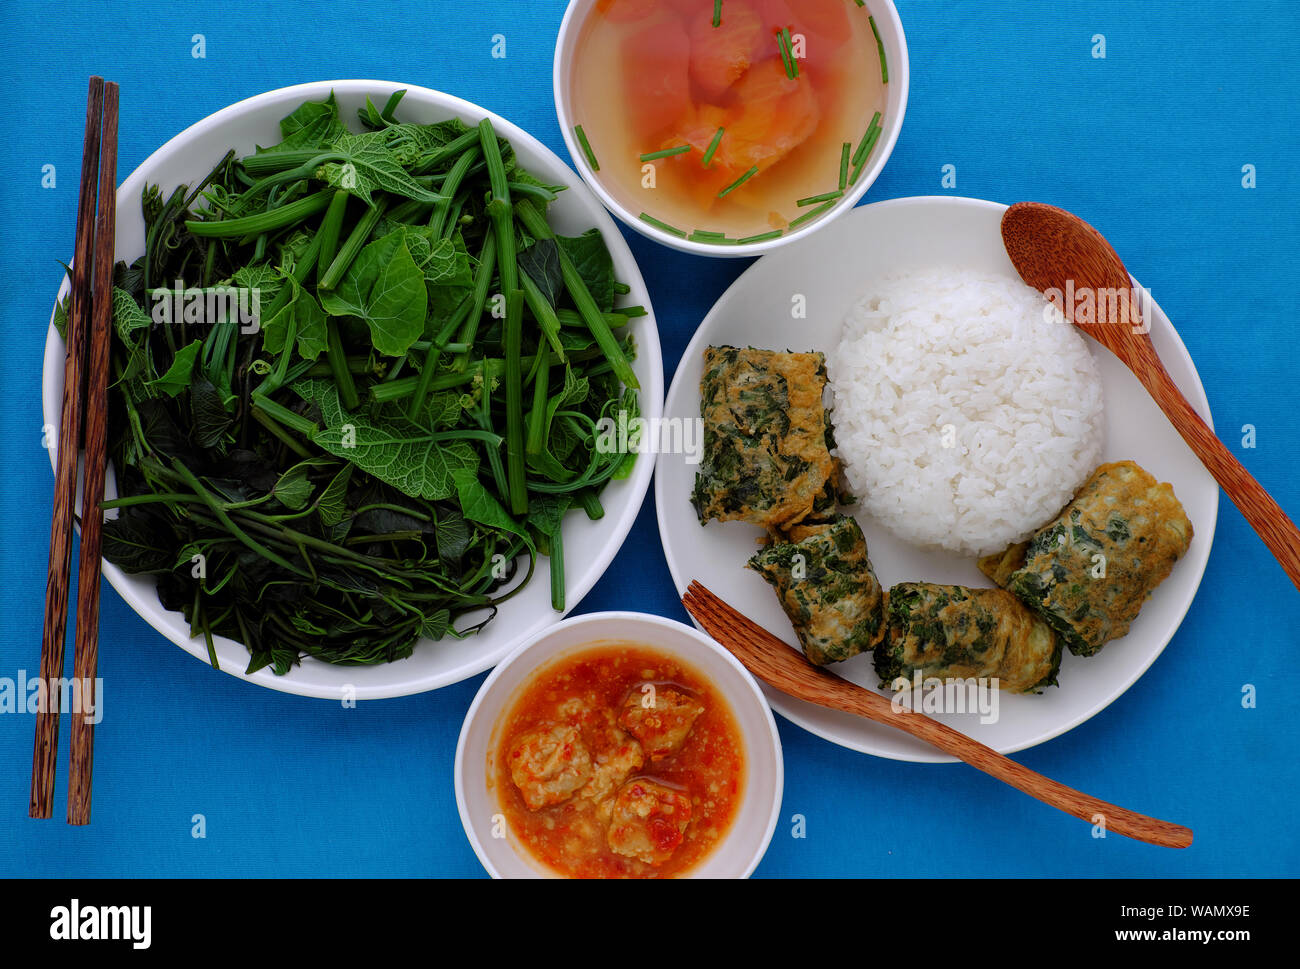 Vue de dessus le déjeuner repas Vietnamien avec des légumes bouillis, tofu fromage, soupe de tomate, œuf frit avec de l'armoise, de nourriture vegan pour les végétariens sur bleu Banque D'Images